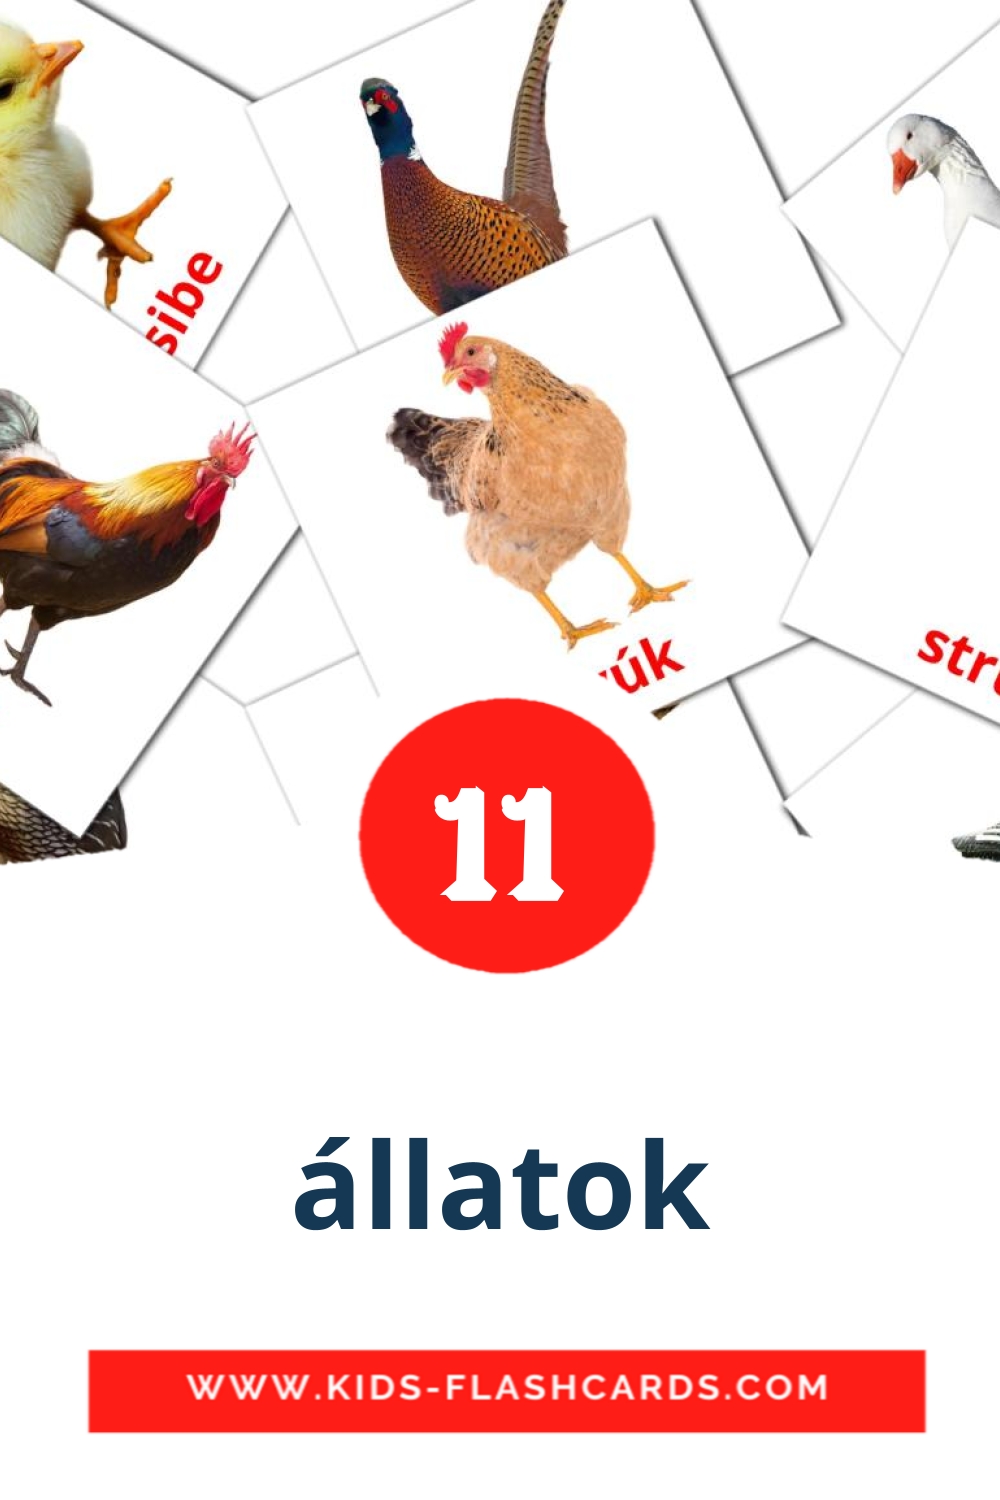 11 carte illustrate di állatok per la scuola materna in amárica